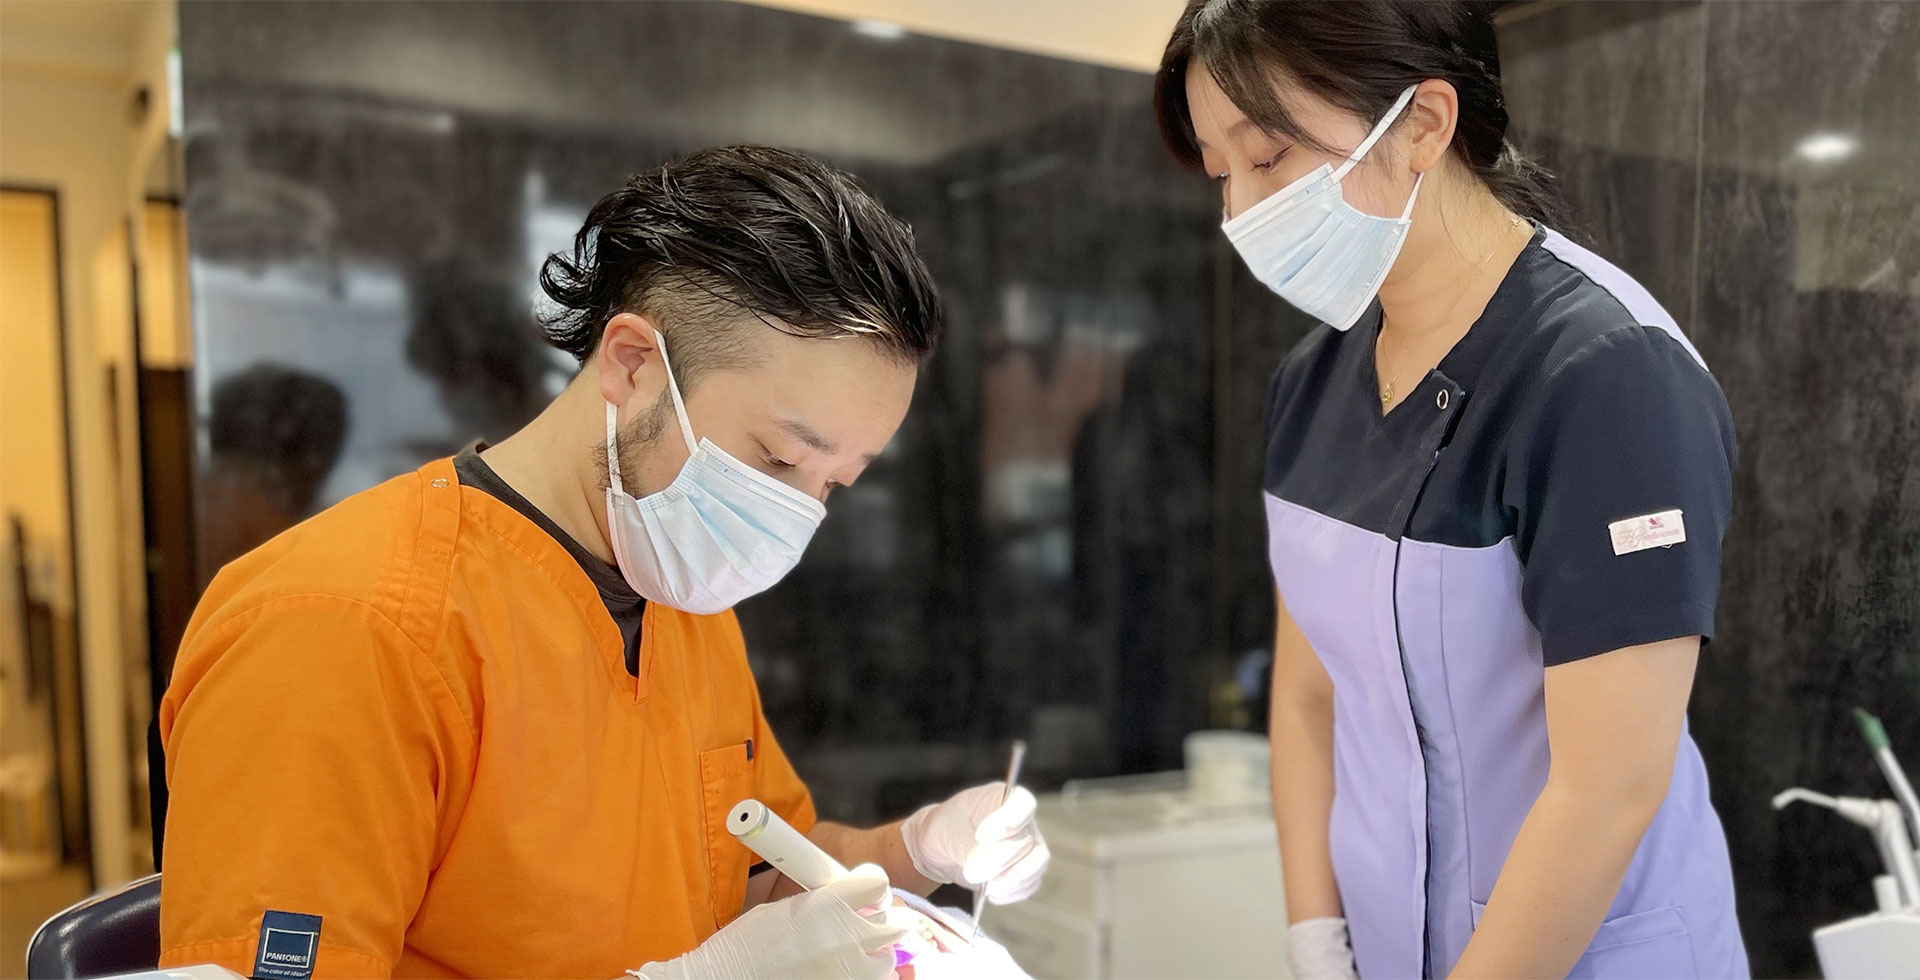 湘南台駅西口から徒歩3分の歯科・歯医者「湘南台いつき歯科」は、とことん丁寧な治療をモットーに、痛みを最小限に抑えた高精度の治療を提供しています。